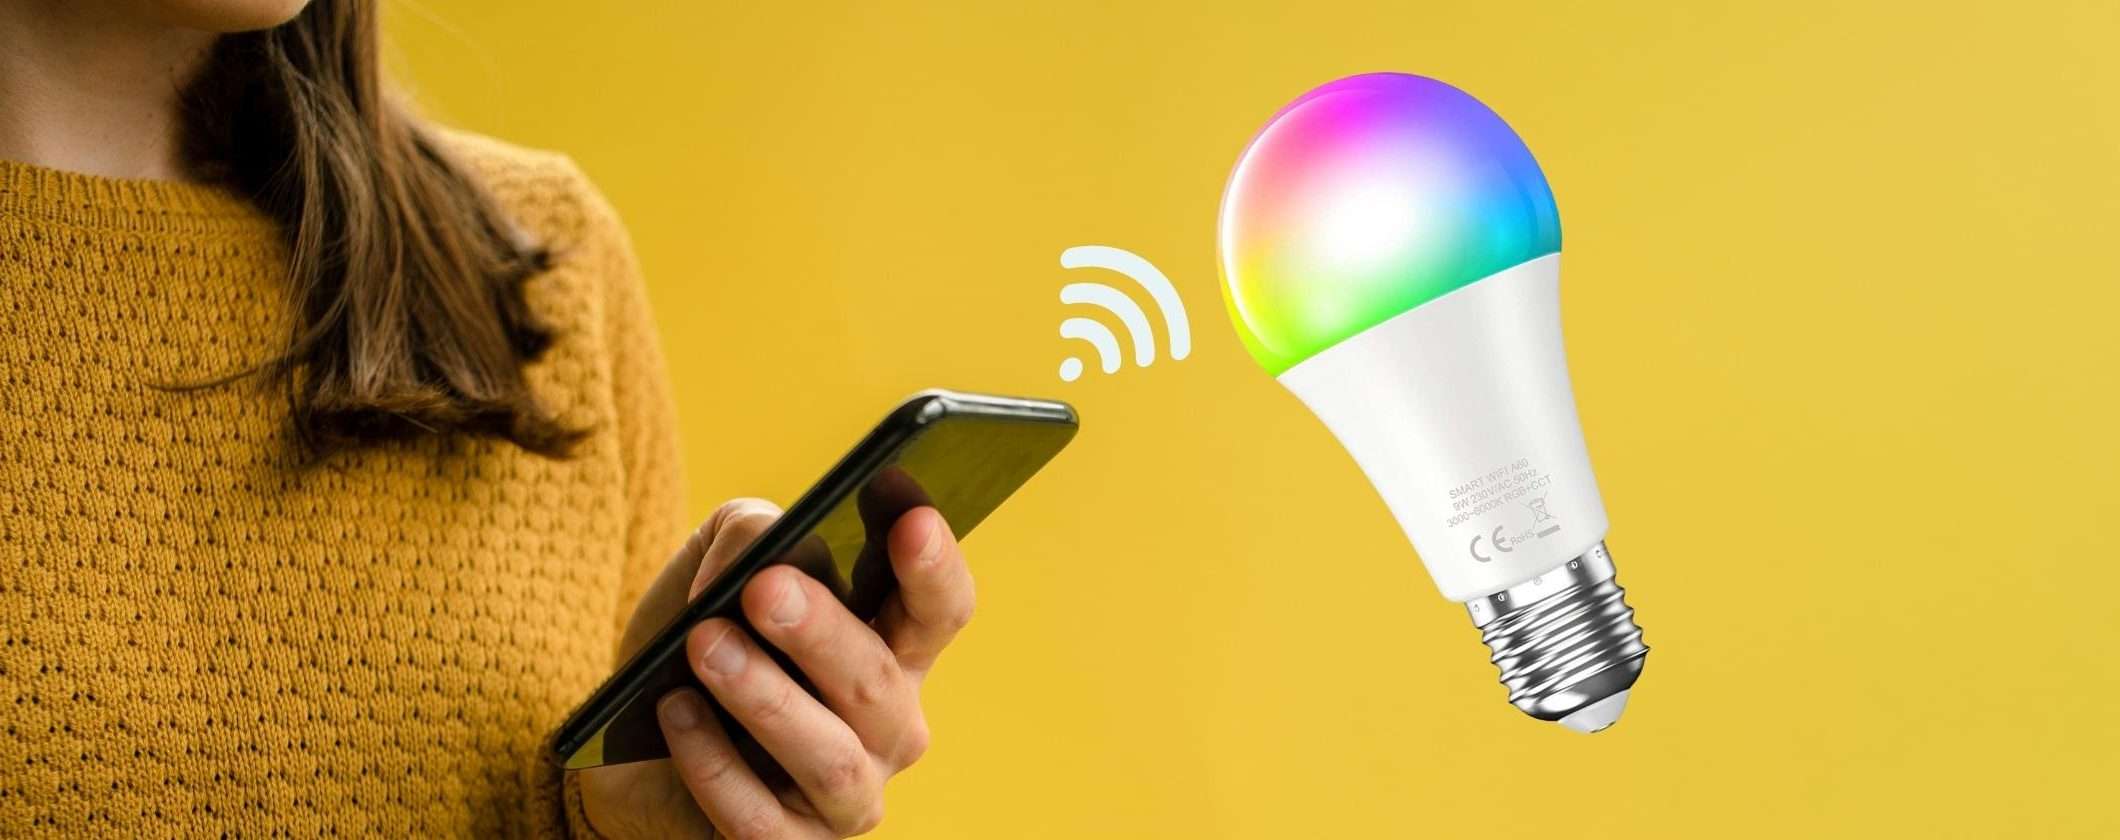 6 Lampadine WiFi: rendi smart la tua casa risparmiando sulle bollette